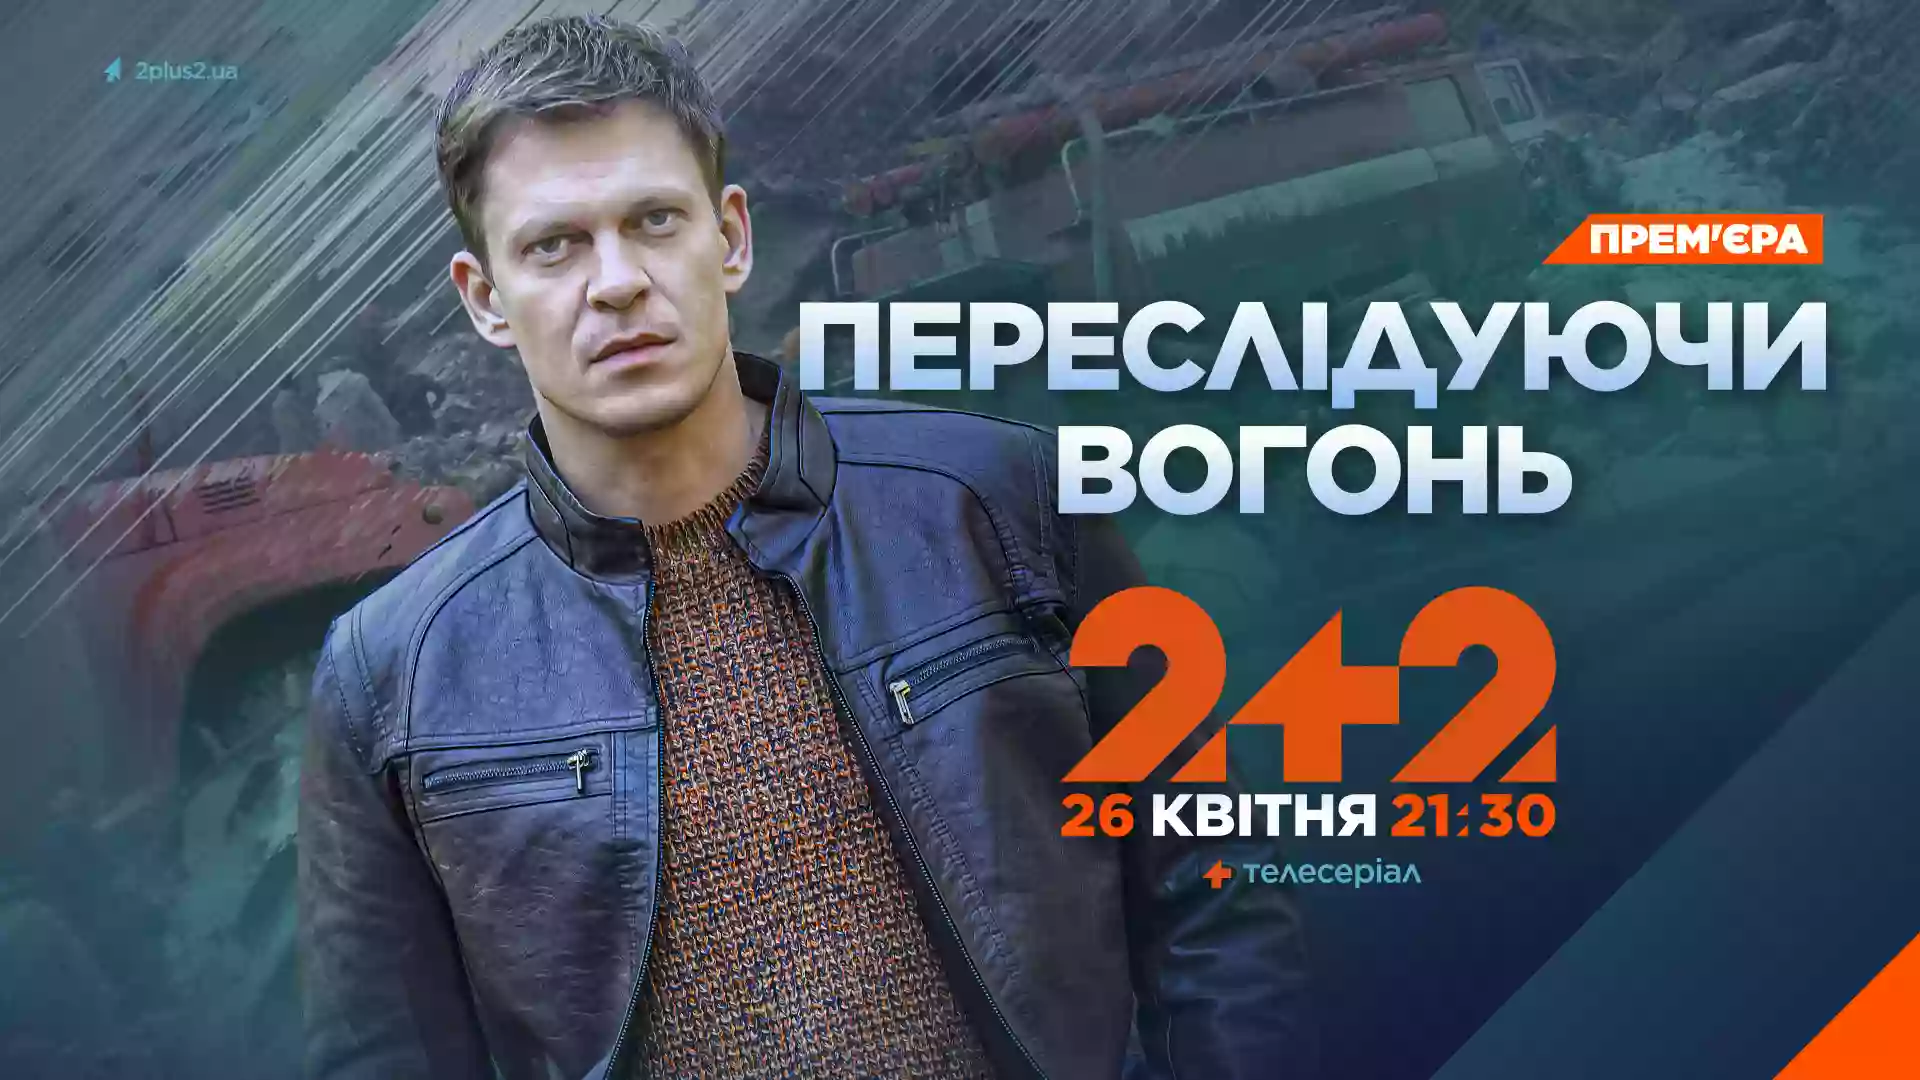 До дня пам’яті аварії на Чорнобильській АЕС «2+2» покаже прем’єру 4-серійної драми «Переслідуючи вогонь»